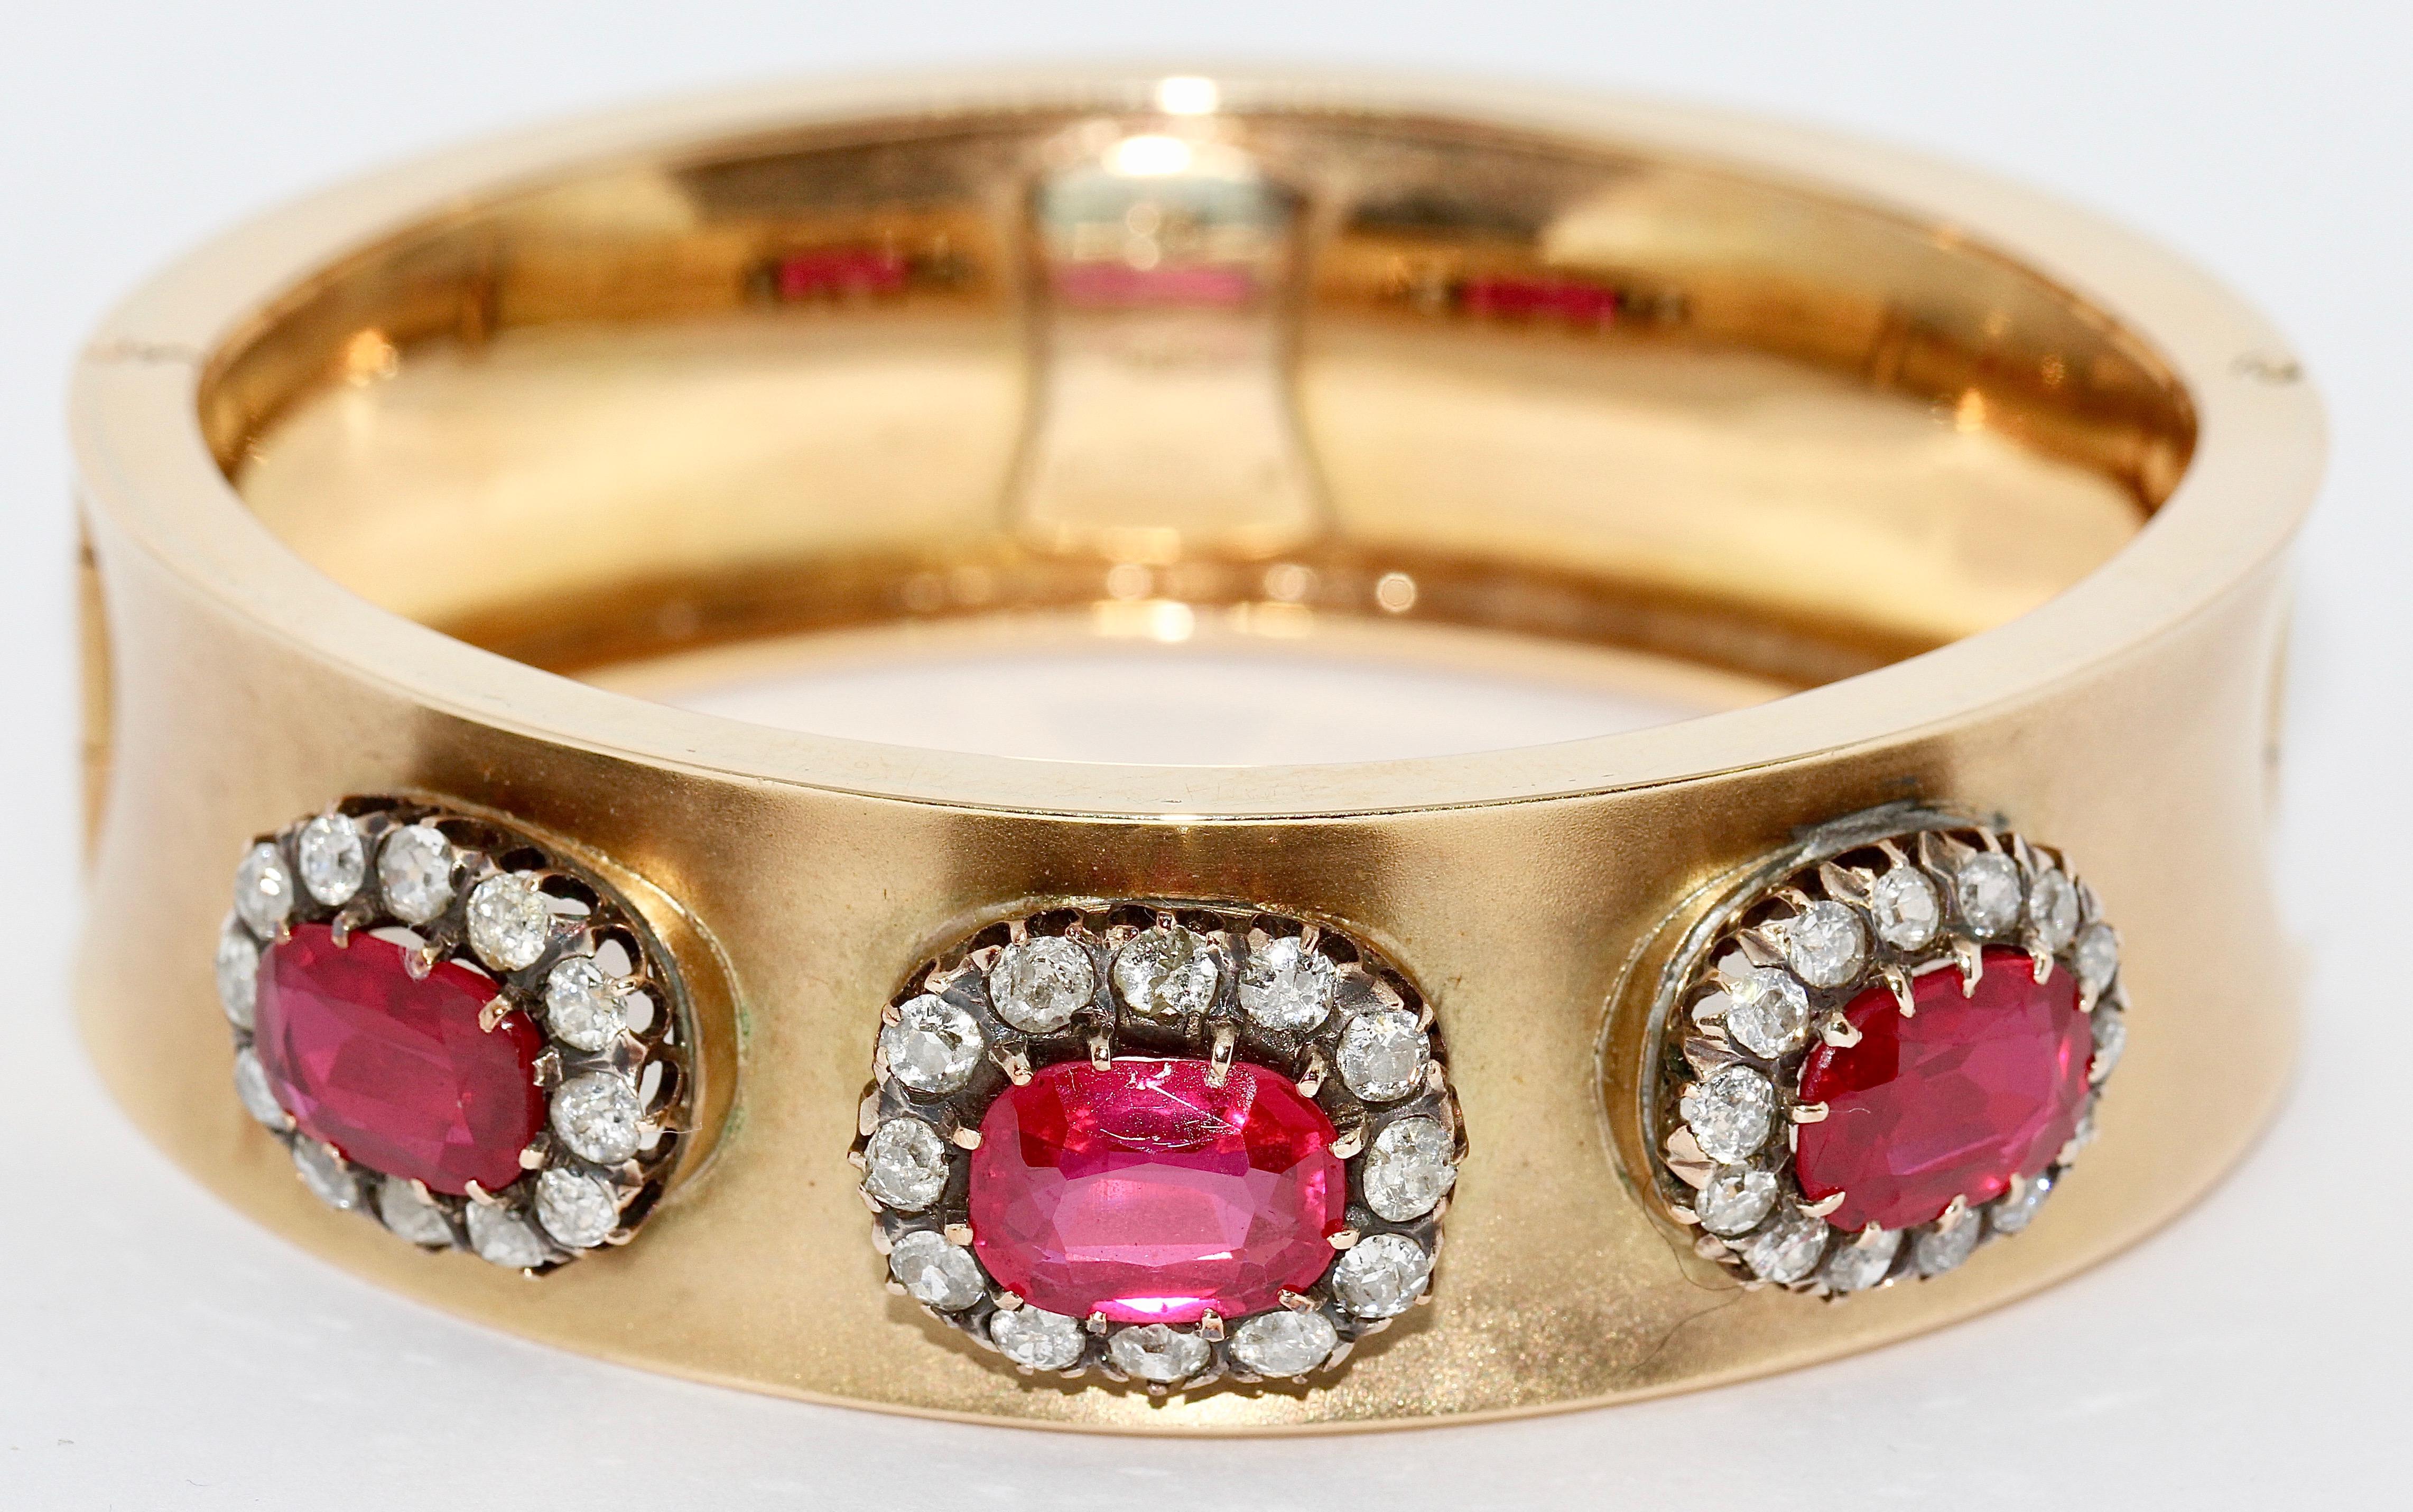 Antique bangle pour femme avec de gros Rubis et Diamants. or 14 carats.

Magnifique bracelet pour femme, serti de trois grands rubis et de nombreux petits diamants.

Poinçonné avec 585 et 